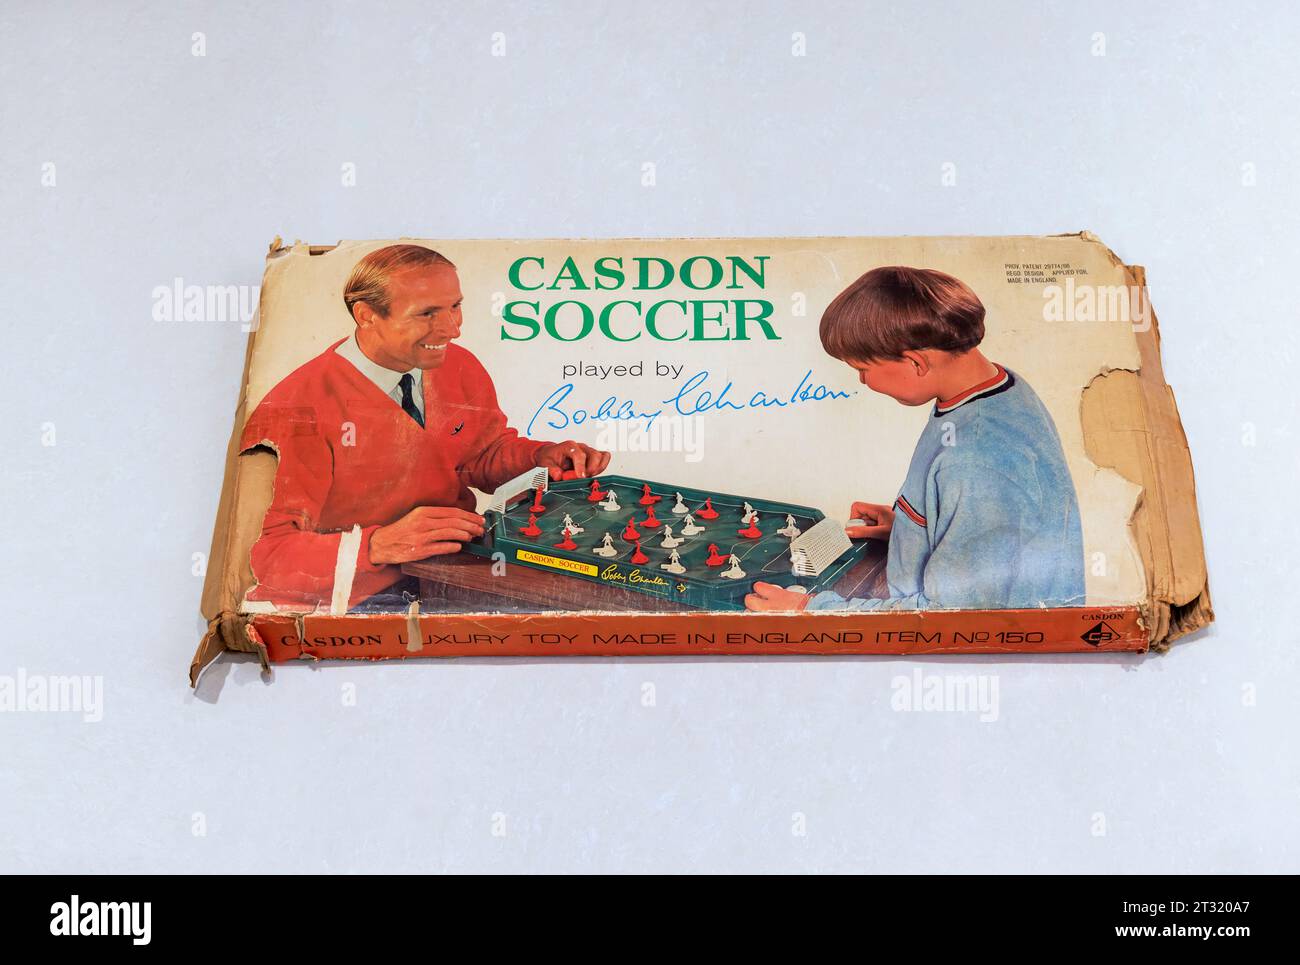 Casdon Soccer wurde von Bobby Charlton gespielt und ist ein klassisches Kinderfußballspiel in einer Kiste aus der Mitte der 1960er Jahre Stockfoto